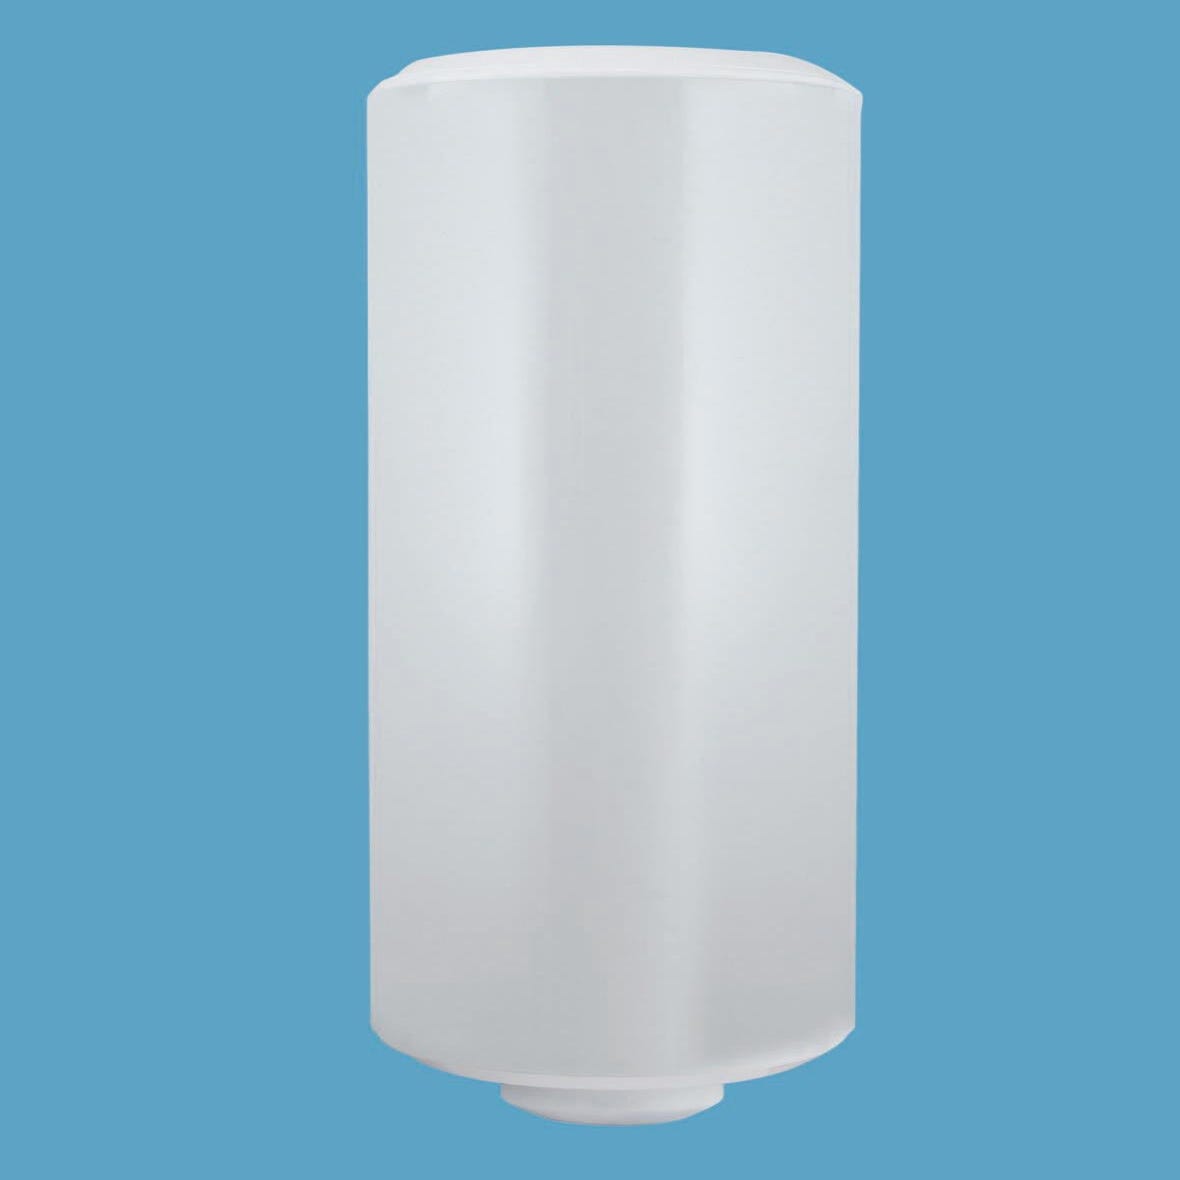 Les produits   Chauffe-eau et ballon d'eau chaude -  Chauffe-eau 200L vertical mono stéatite OLYMPIC